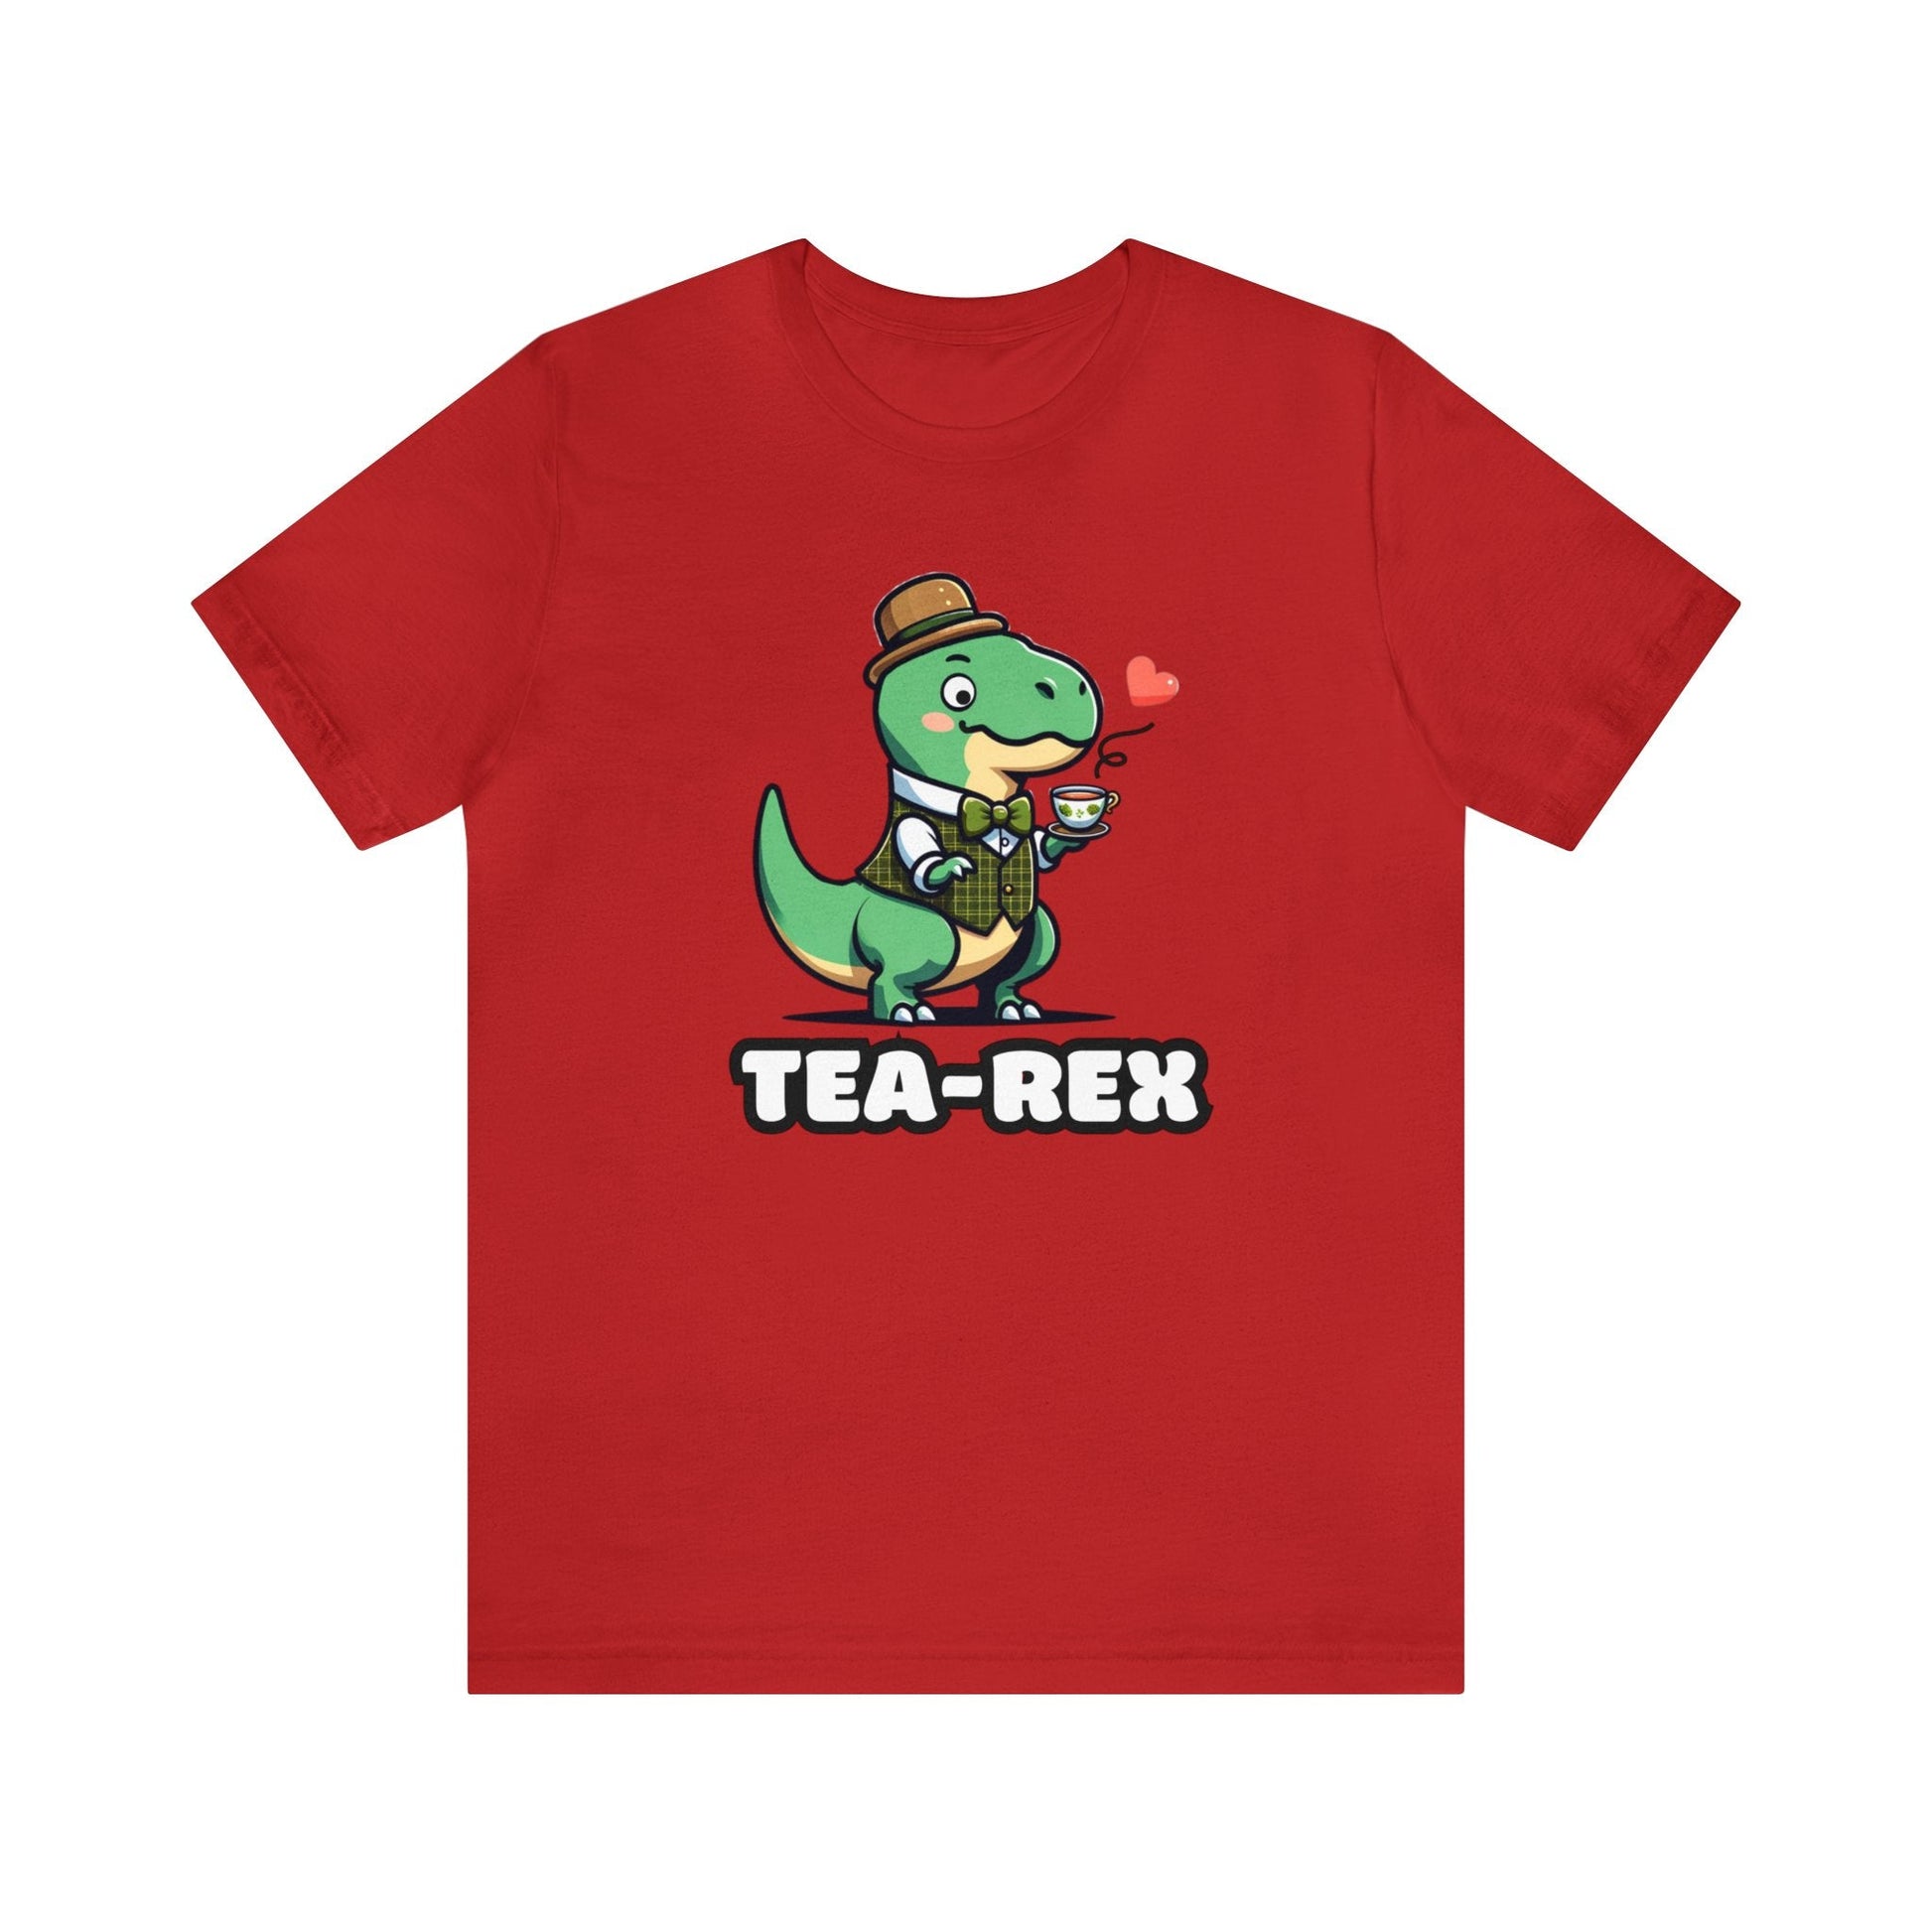 Tea-Rex - Dino T-shirt Red / XS